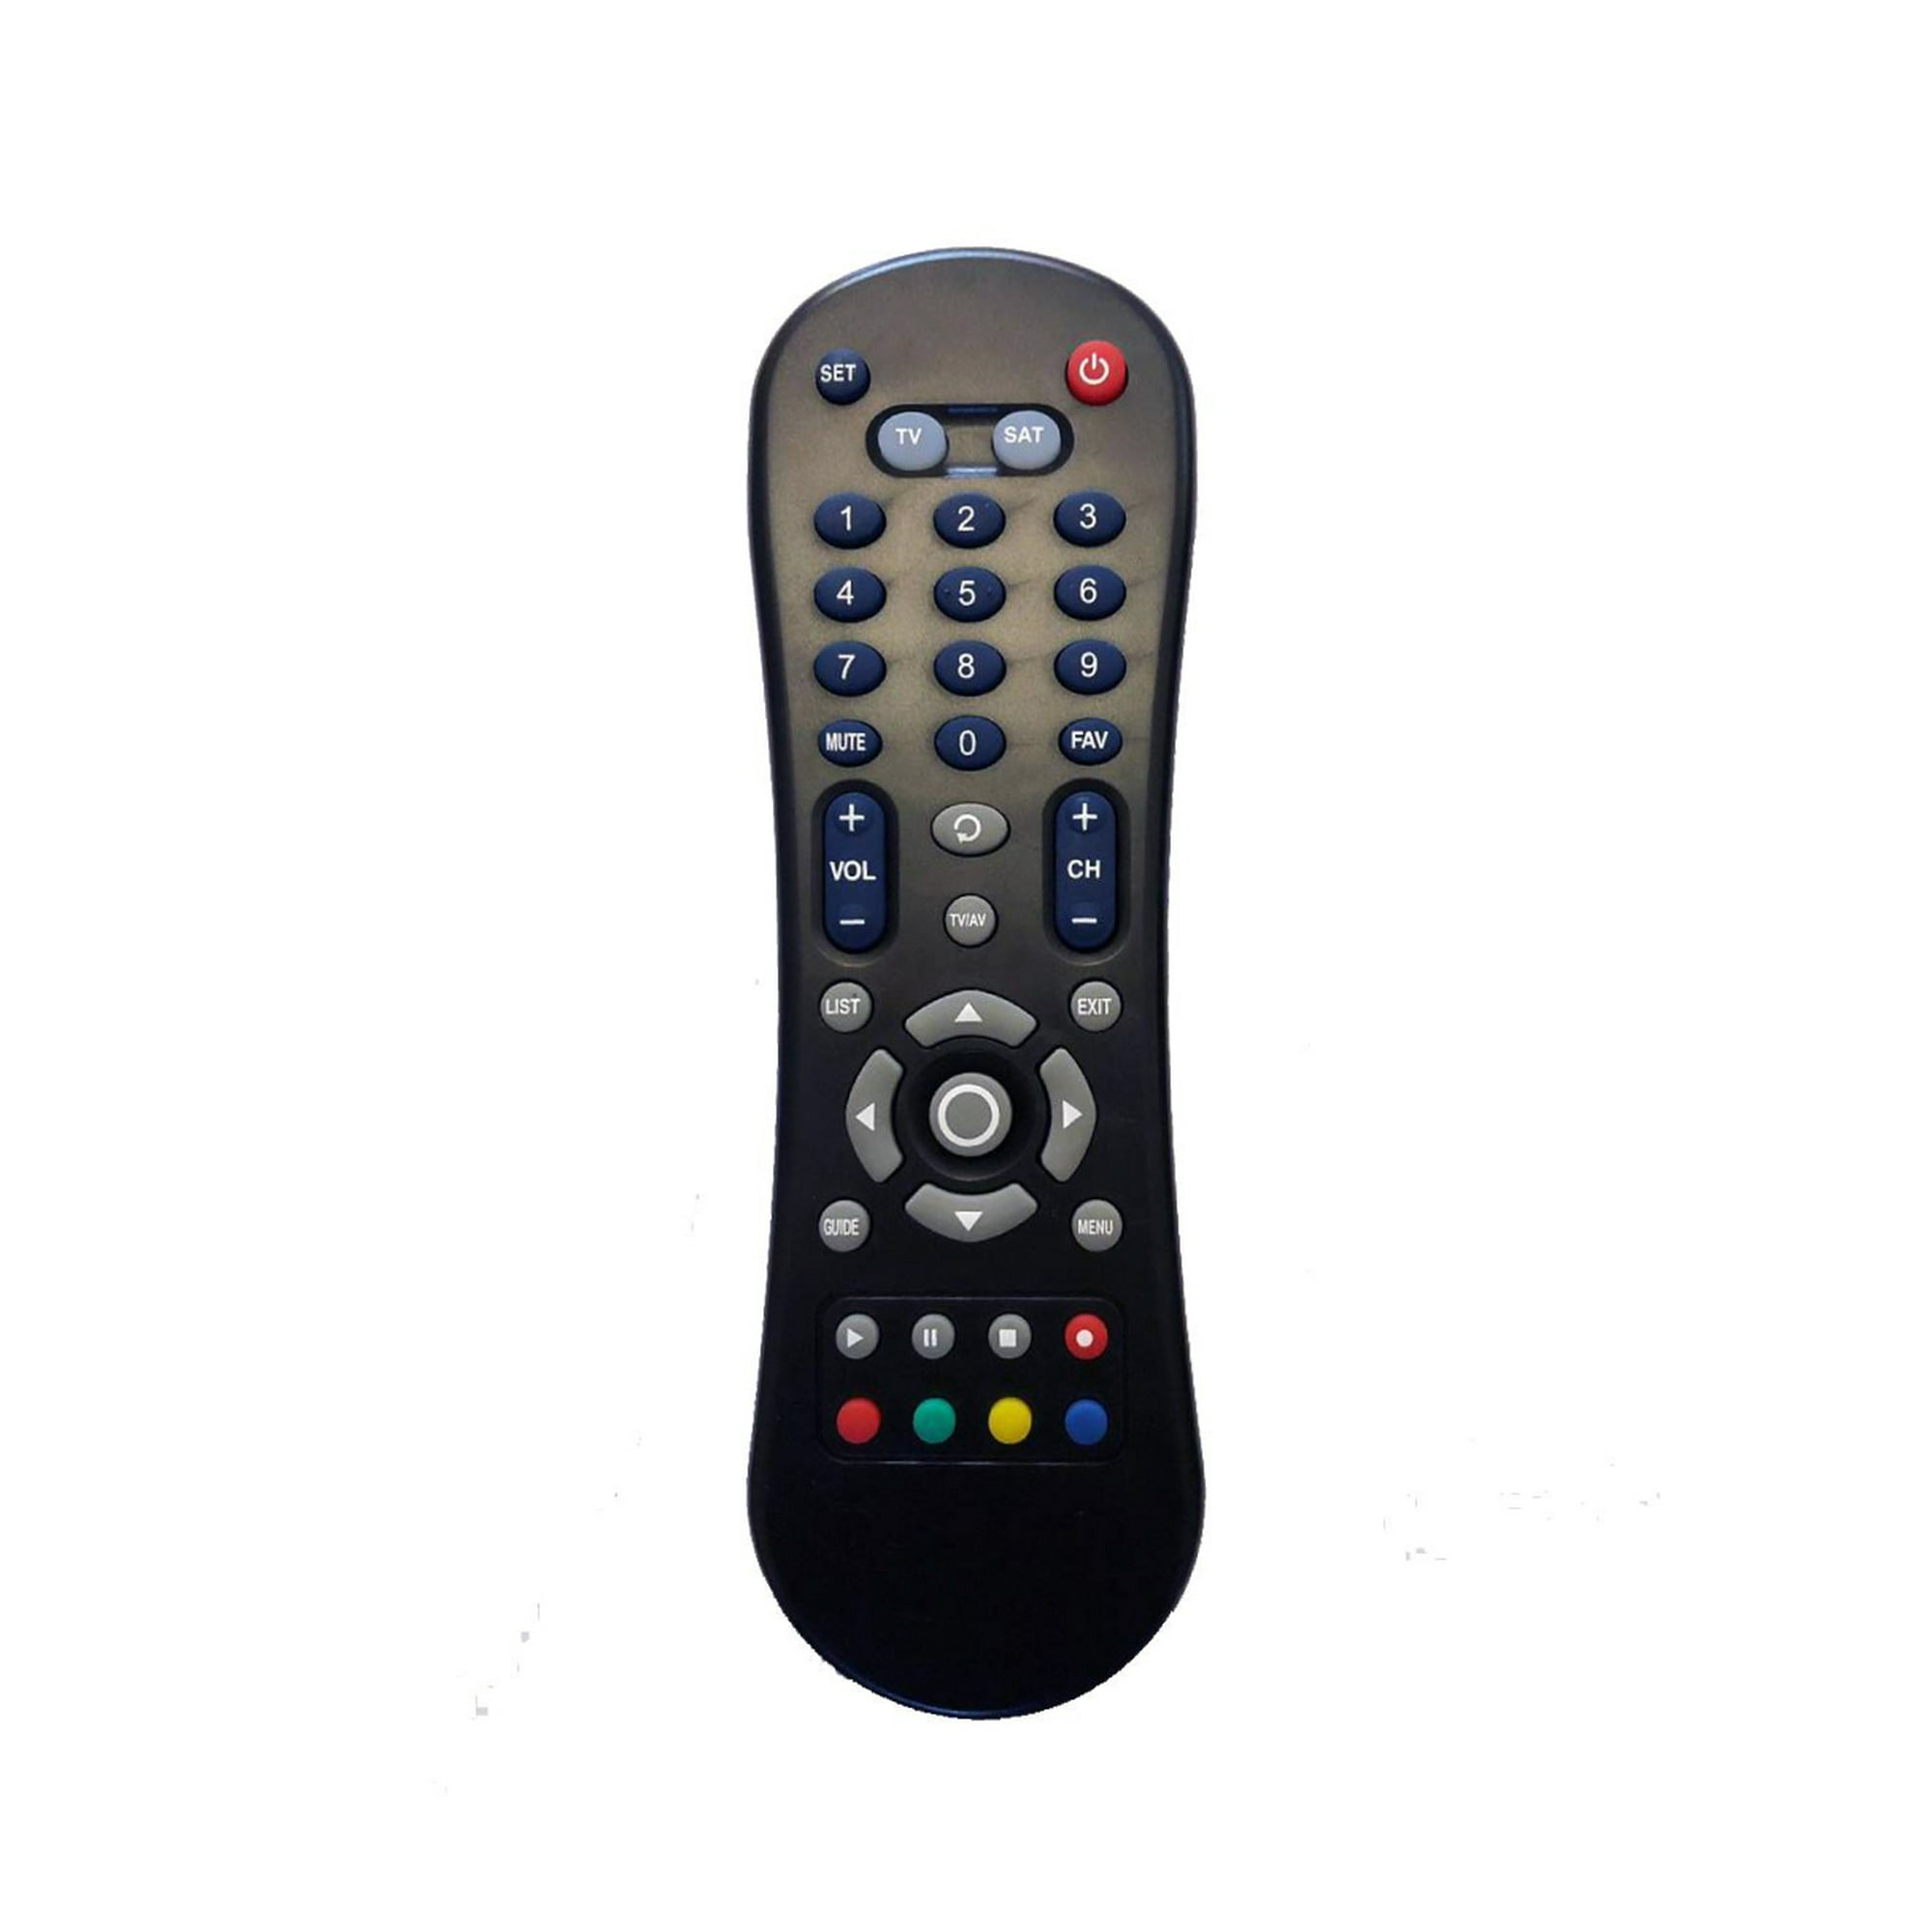 Mando A Distancia Universal Control Remoto Philips Smart Tv Series  58pfl4909/F8